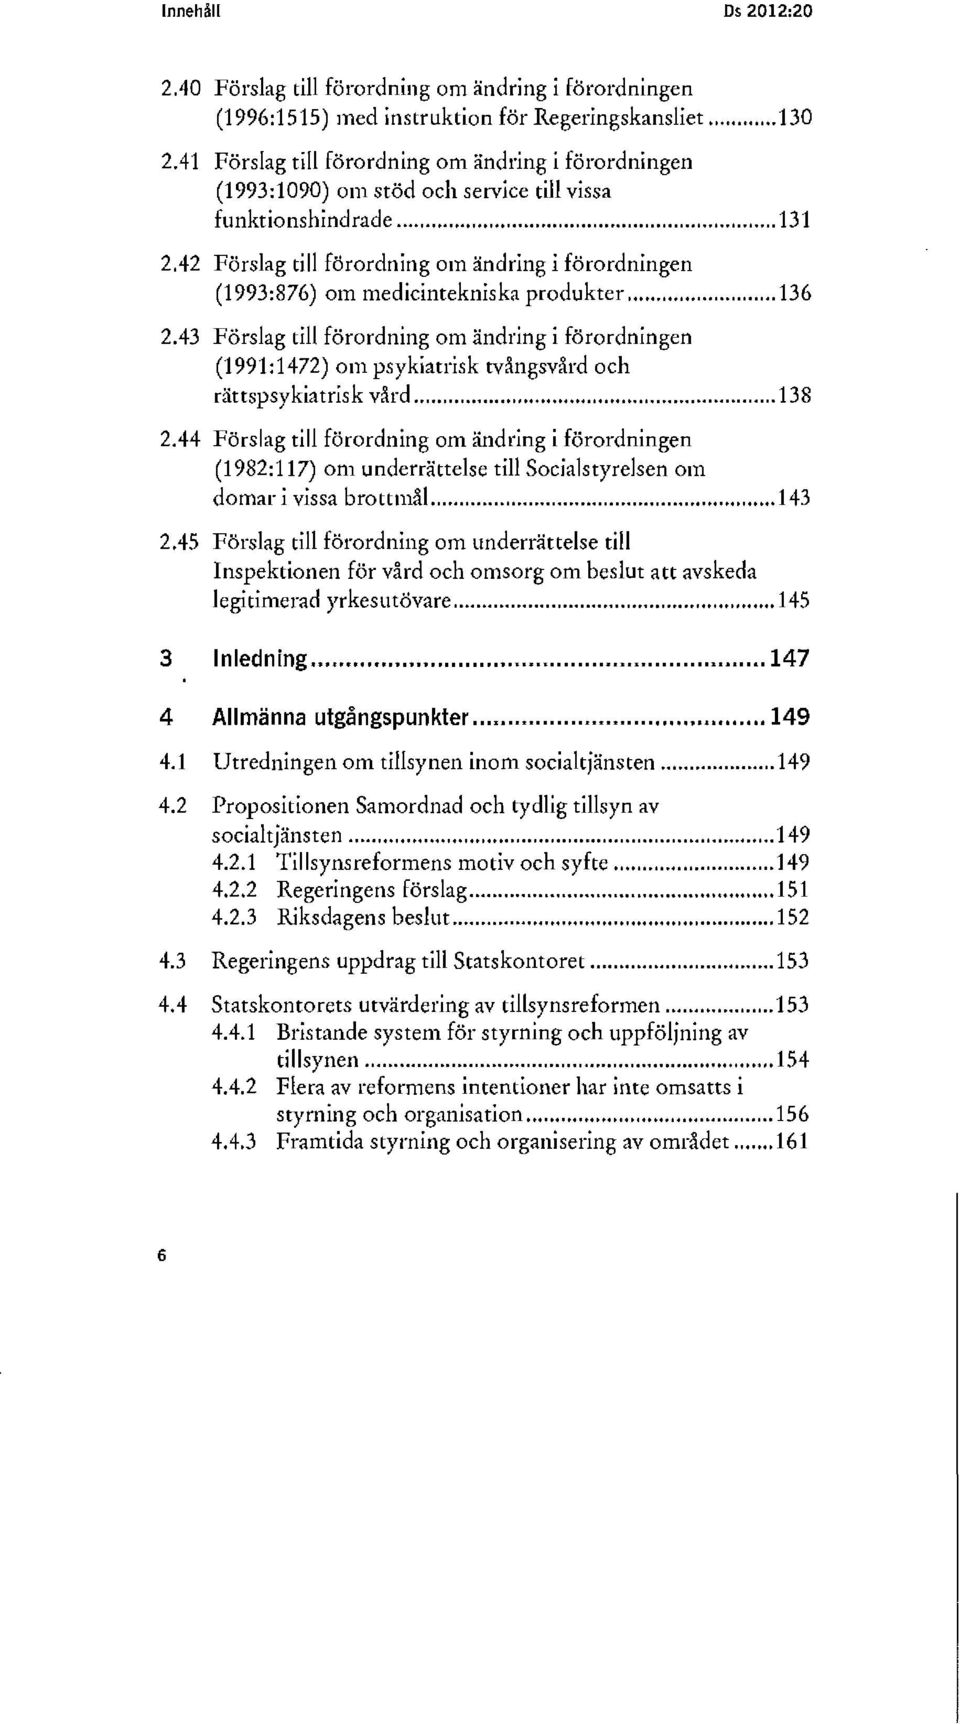 42 Förslag till förordning om ändring i förordningen (1993:876) om medicintekniska produkter... 136 2.